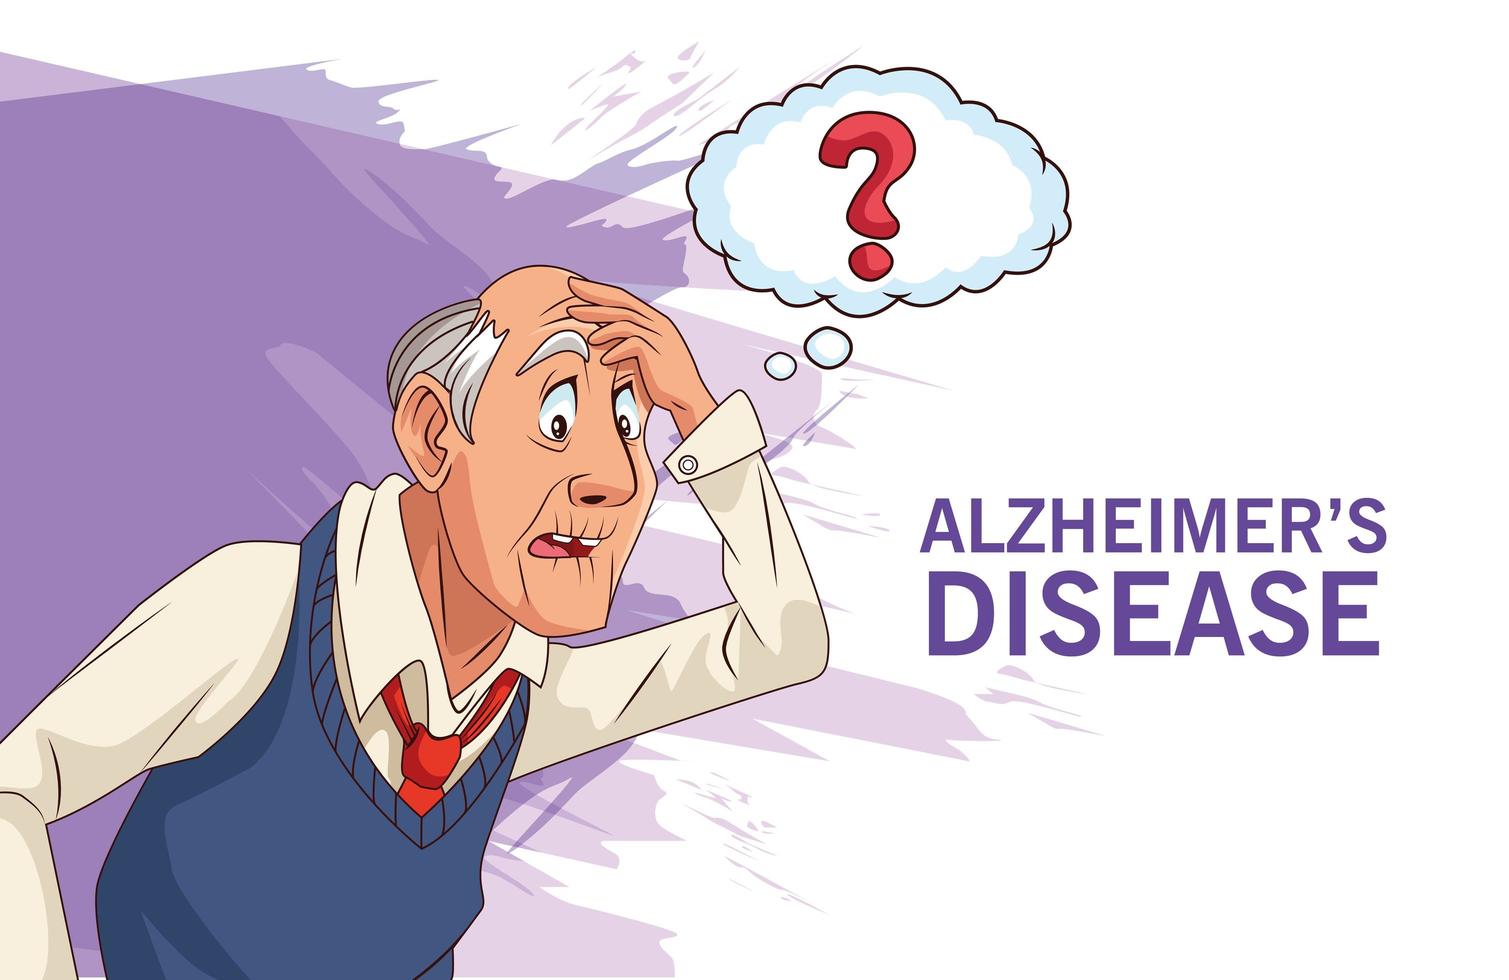 vieil homme patient de la maladie d'alzheimer avec bulle de dialogue demander vecteur